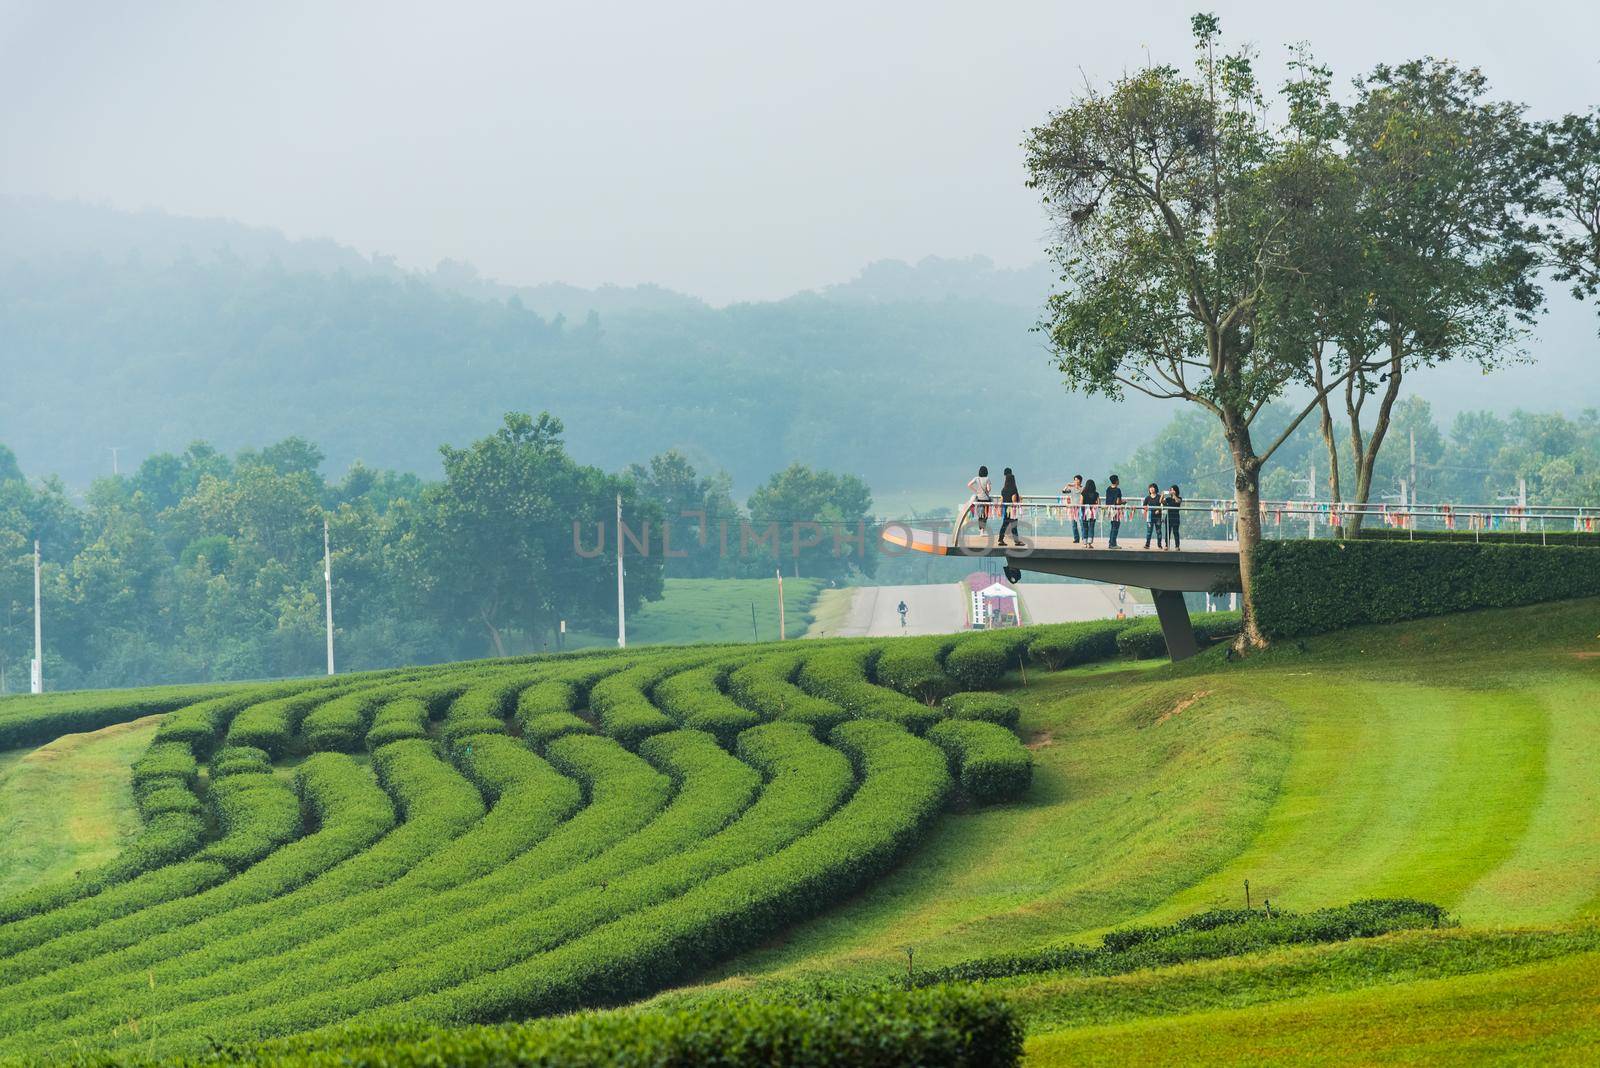 Green tea farm in the morning by Wmpix